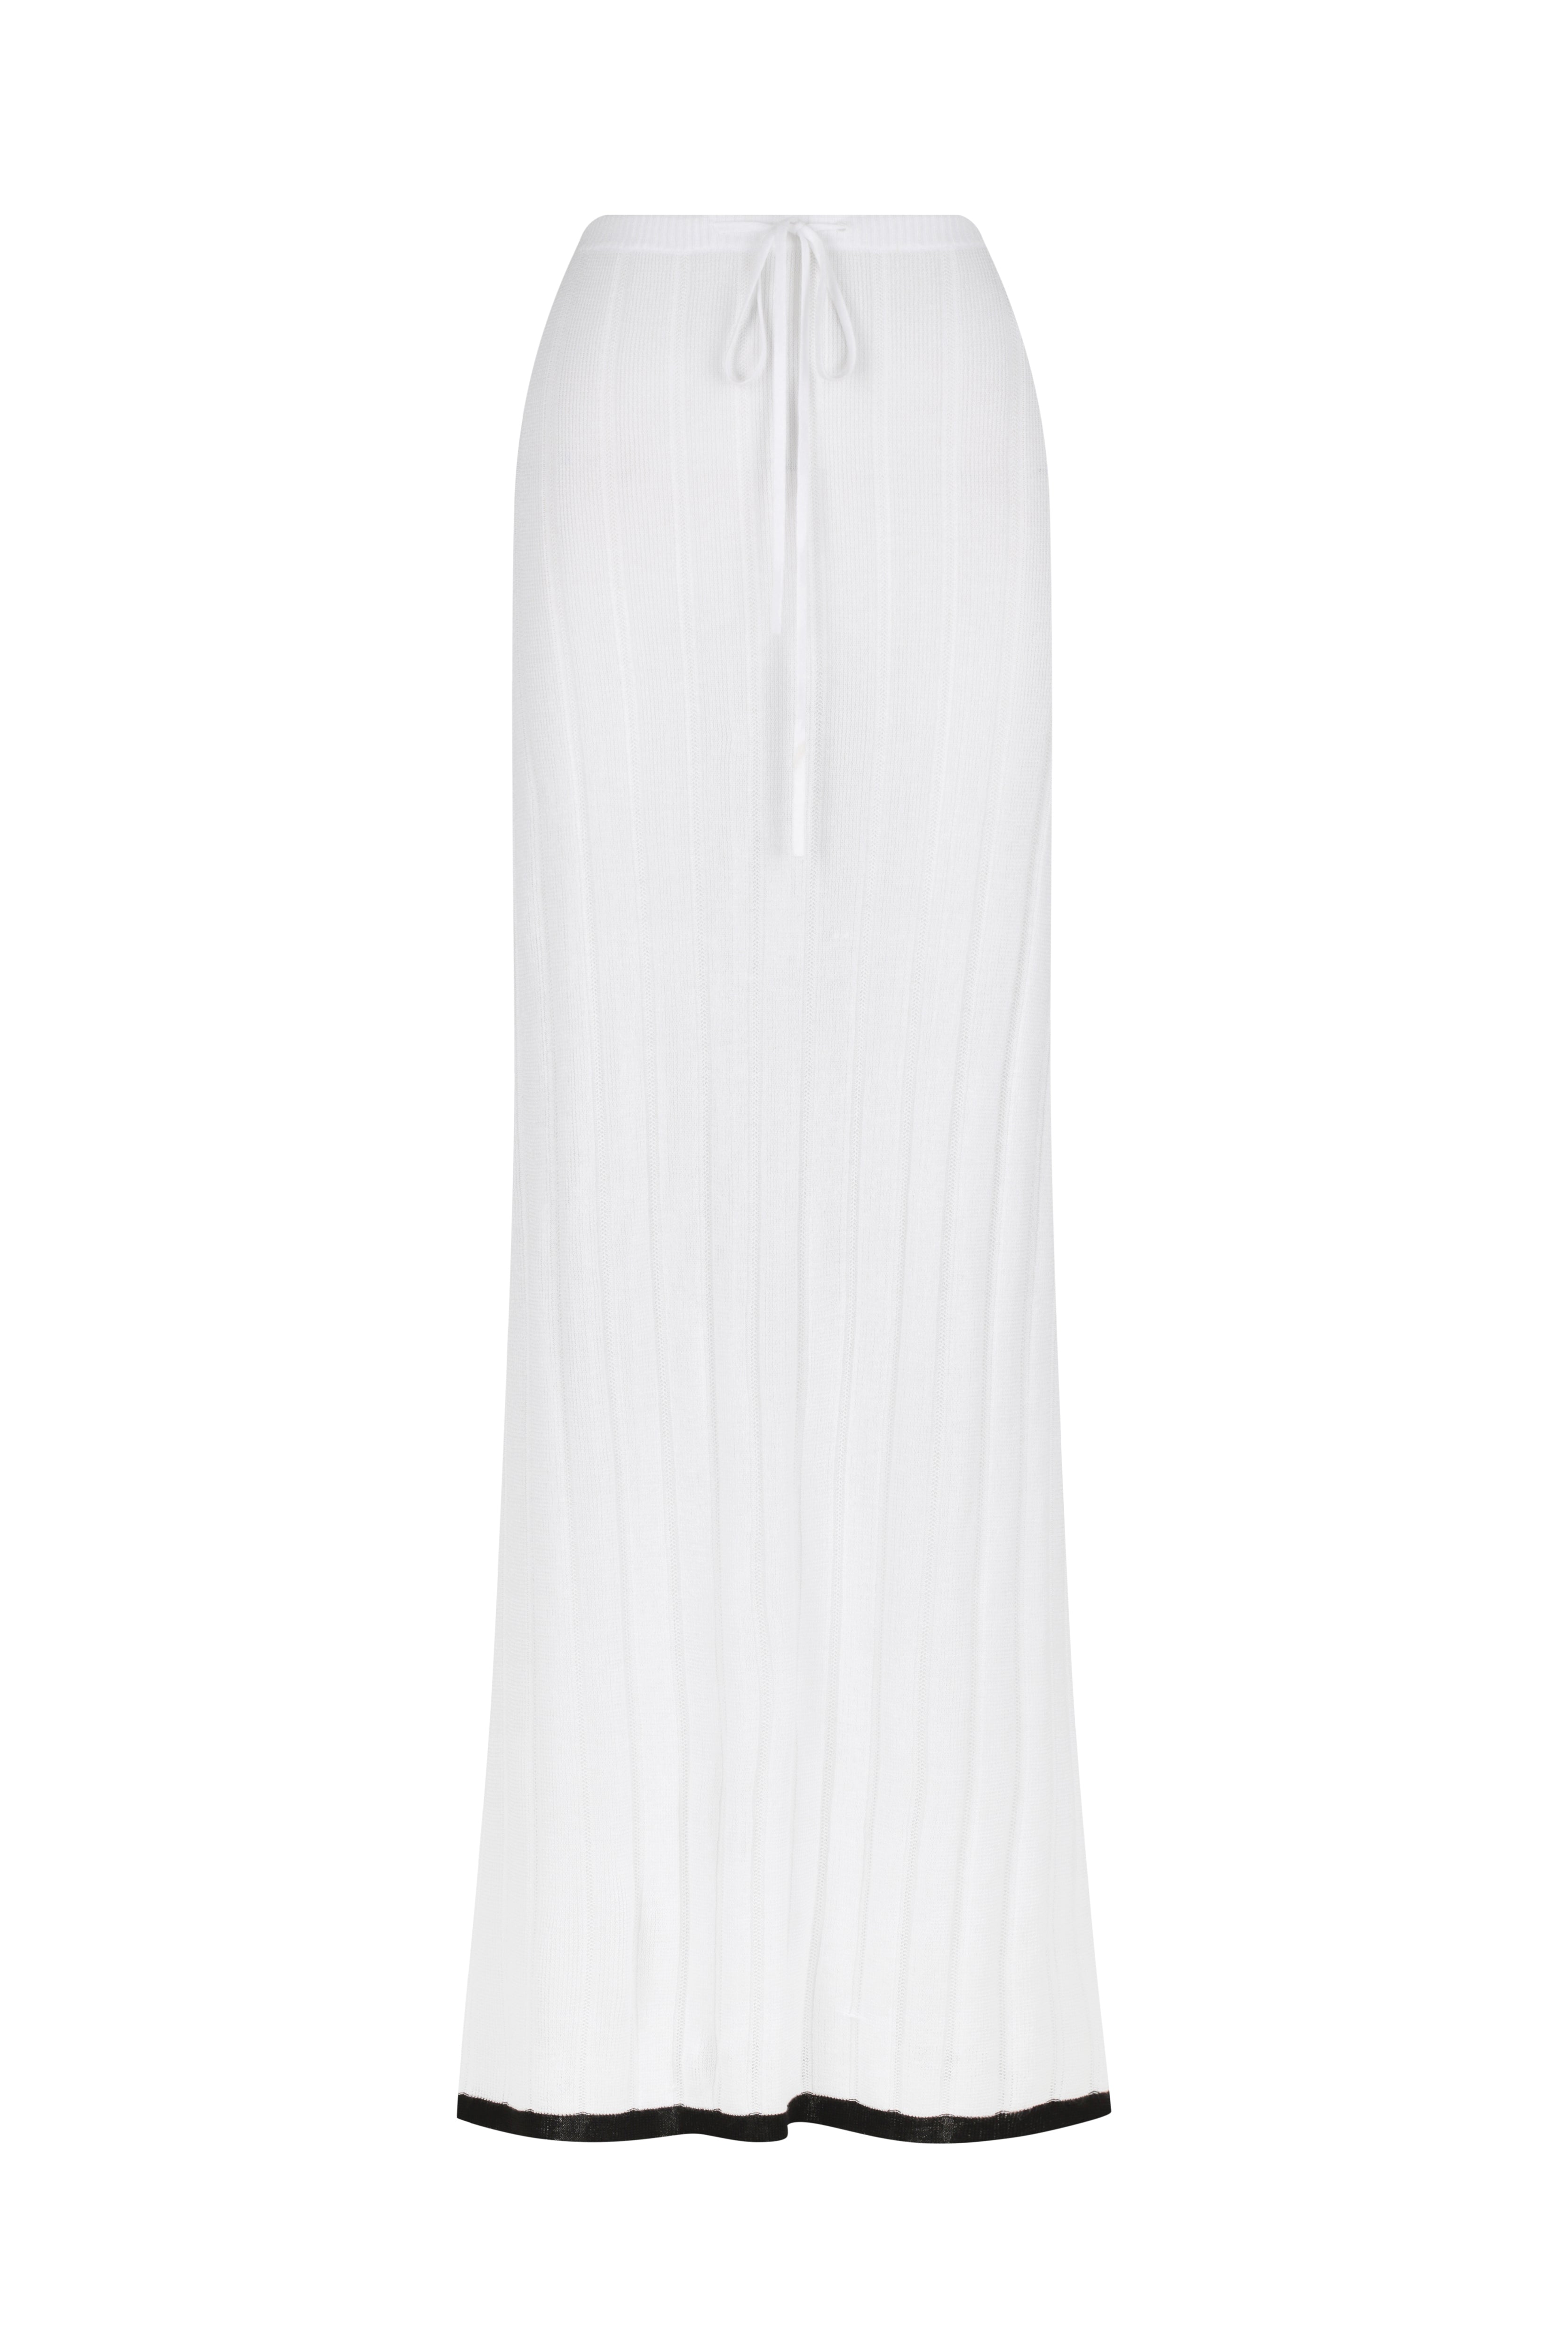 Naom Skirt // White